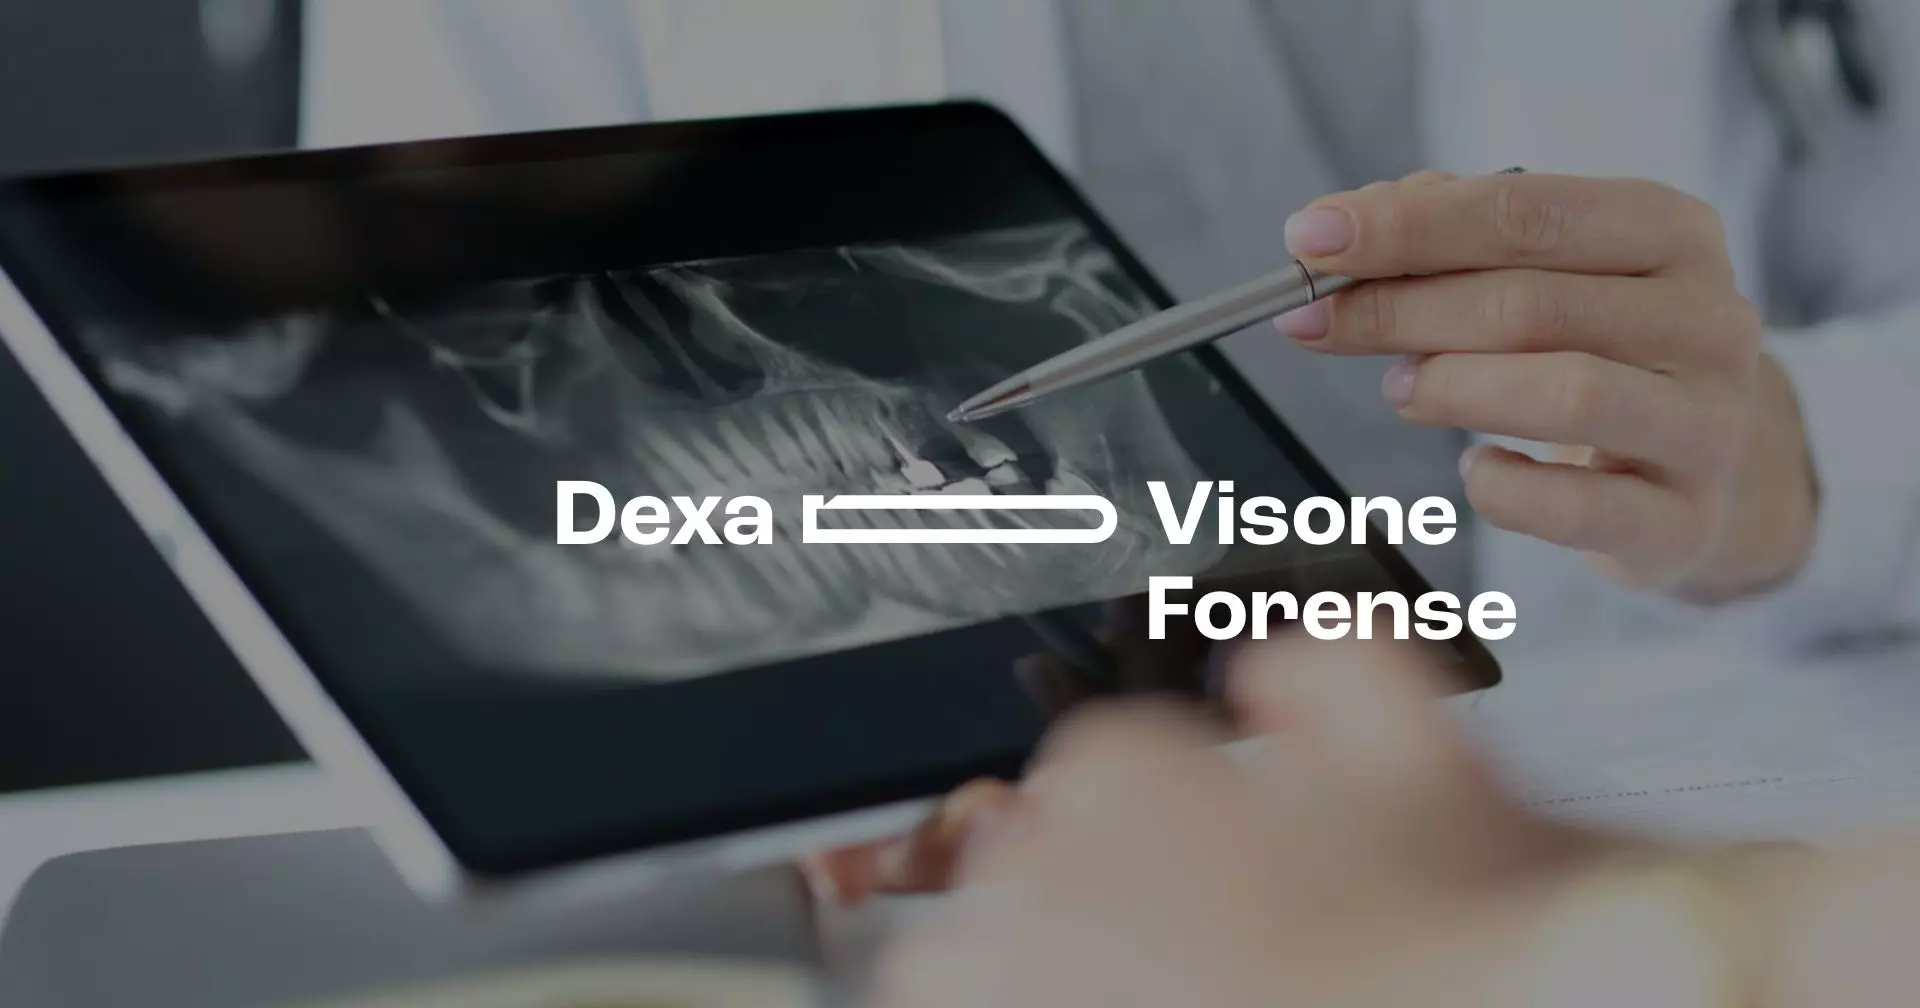 Visione Forense: la perizia dentale diventa digitale con Dexa.